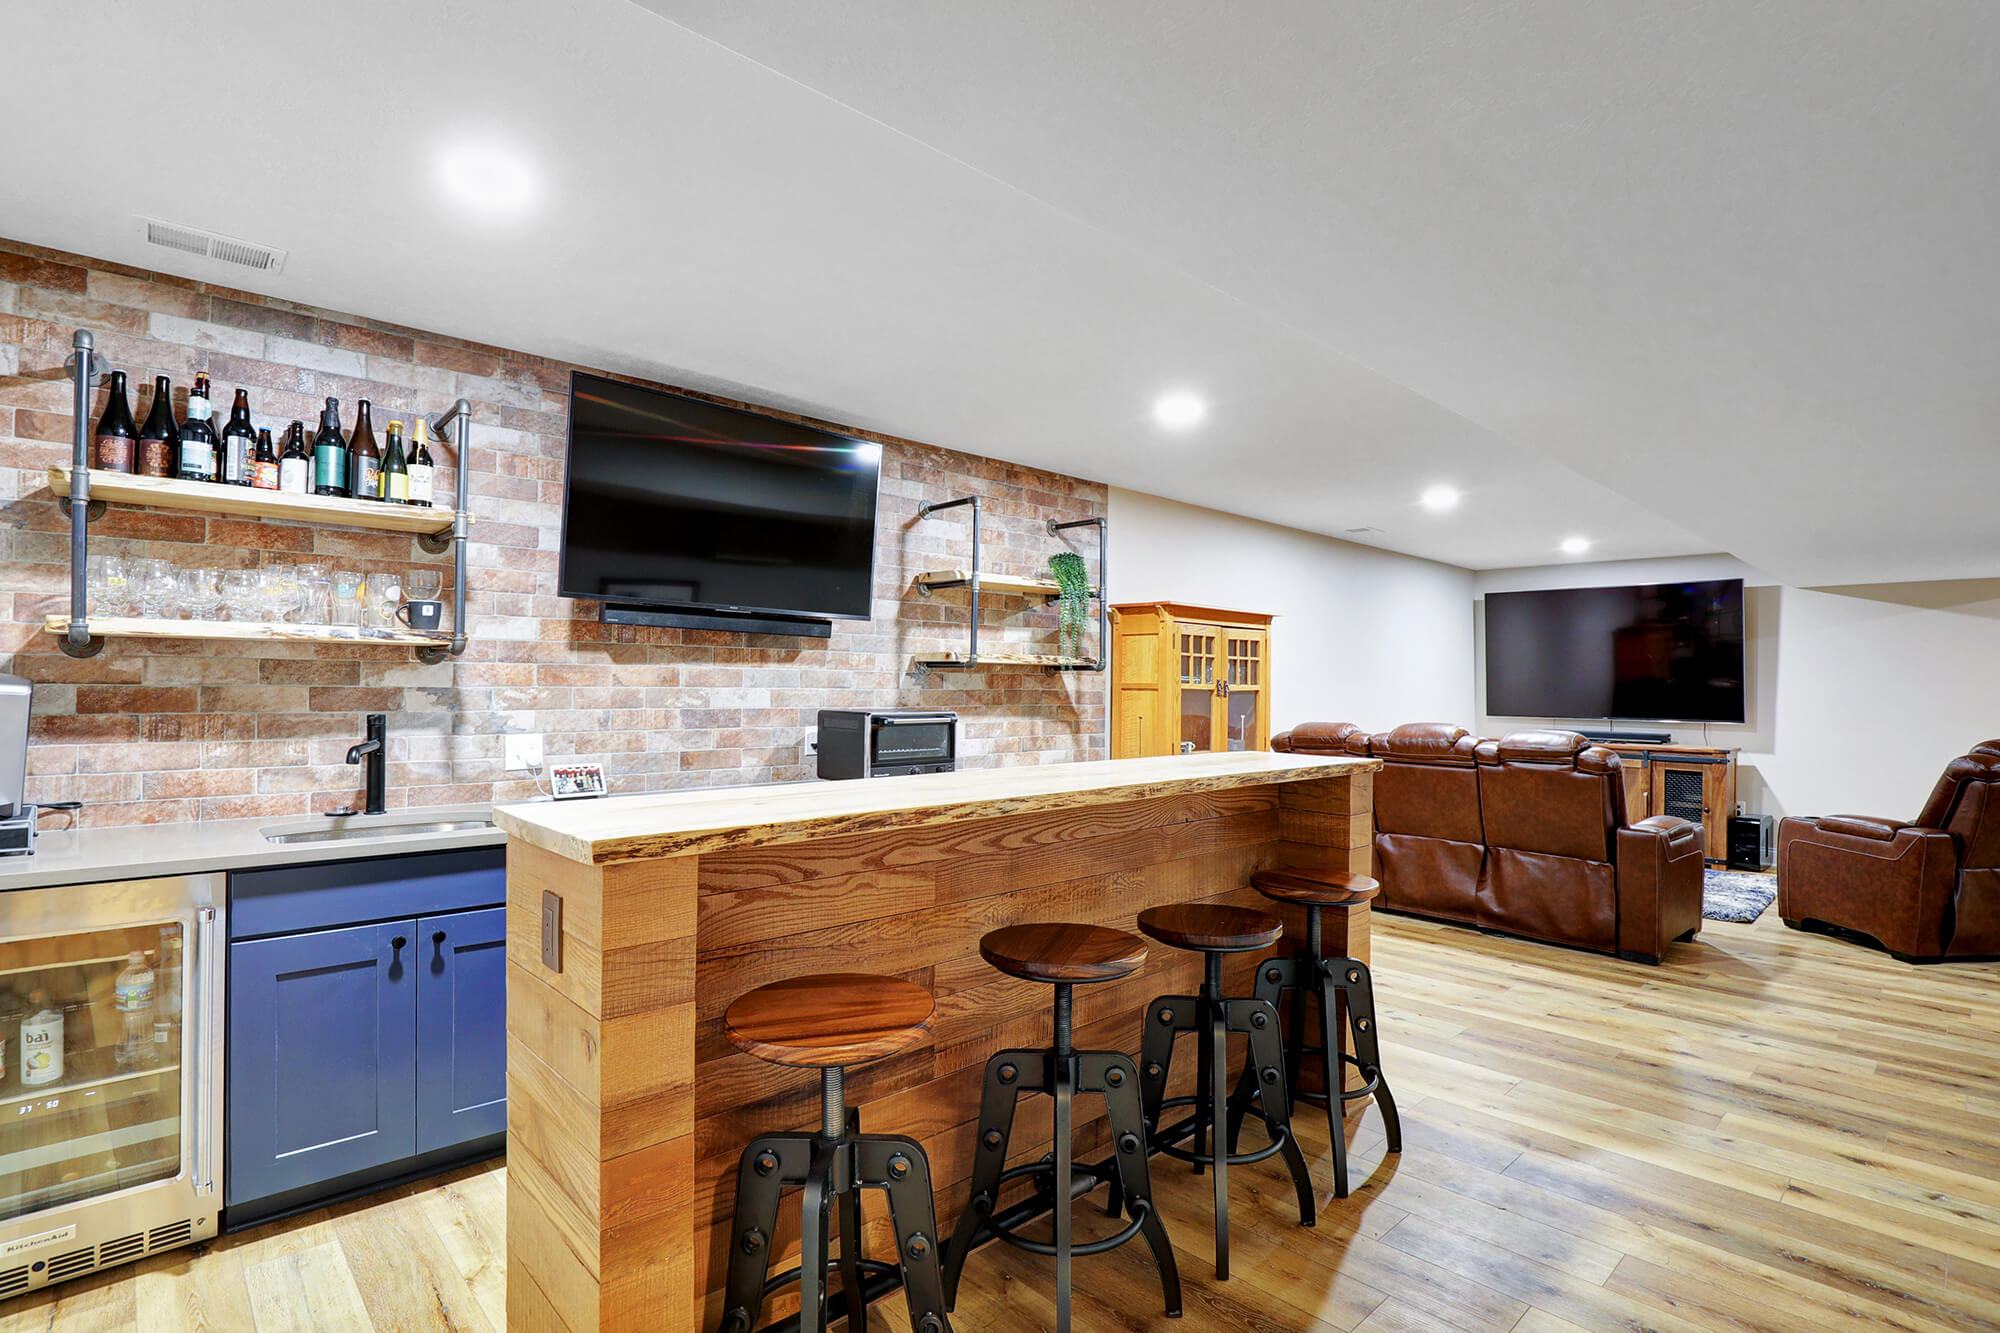 Well-lit basement bar area